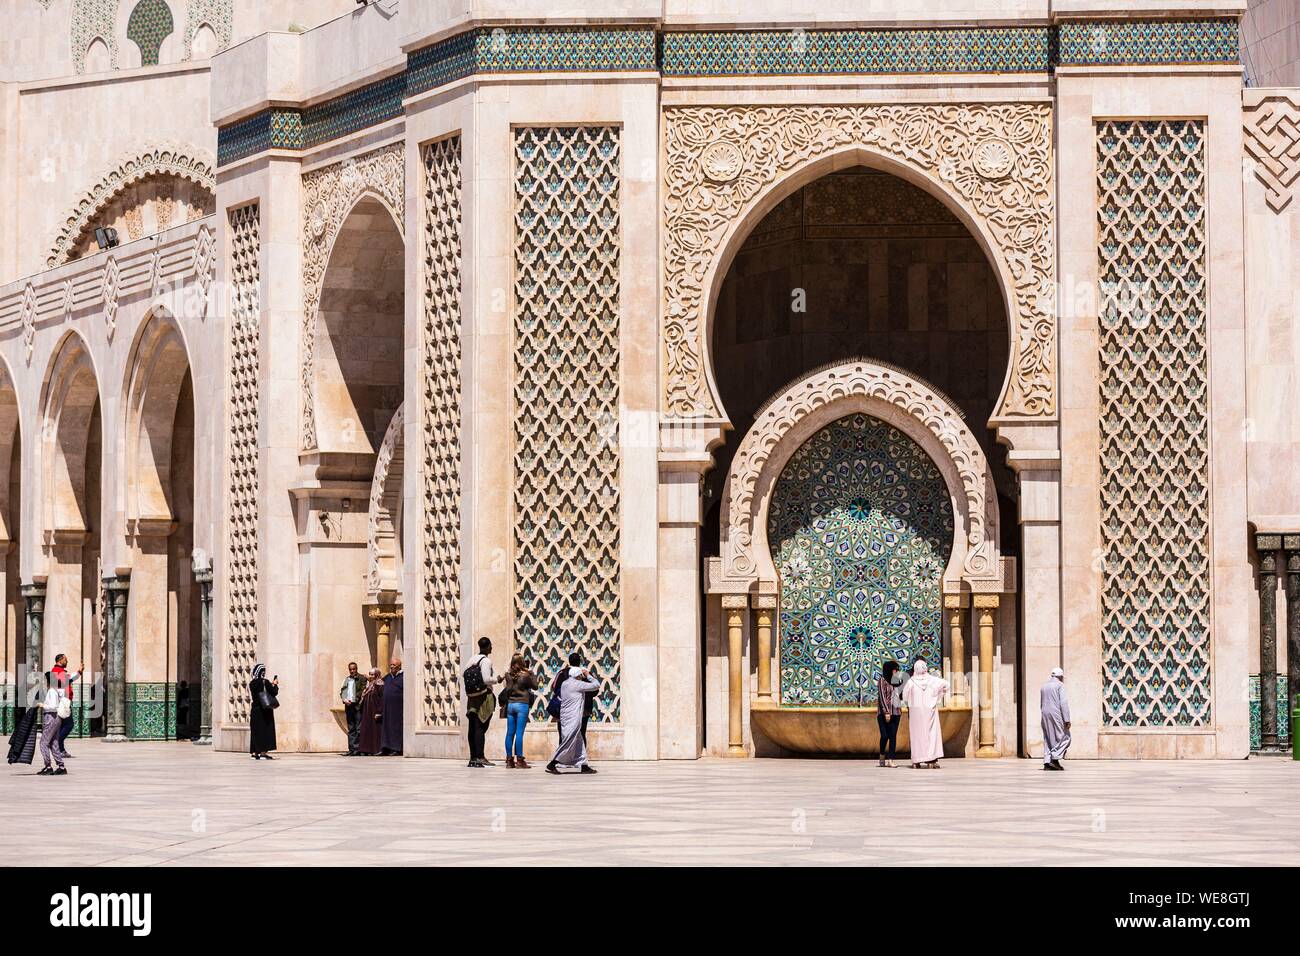 Il Marocco, Casablanca, fontana sul piazzale della moschea di Hassan II Foto Stock